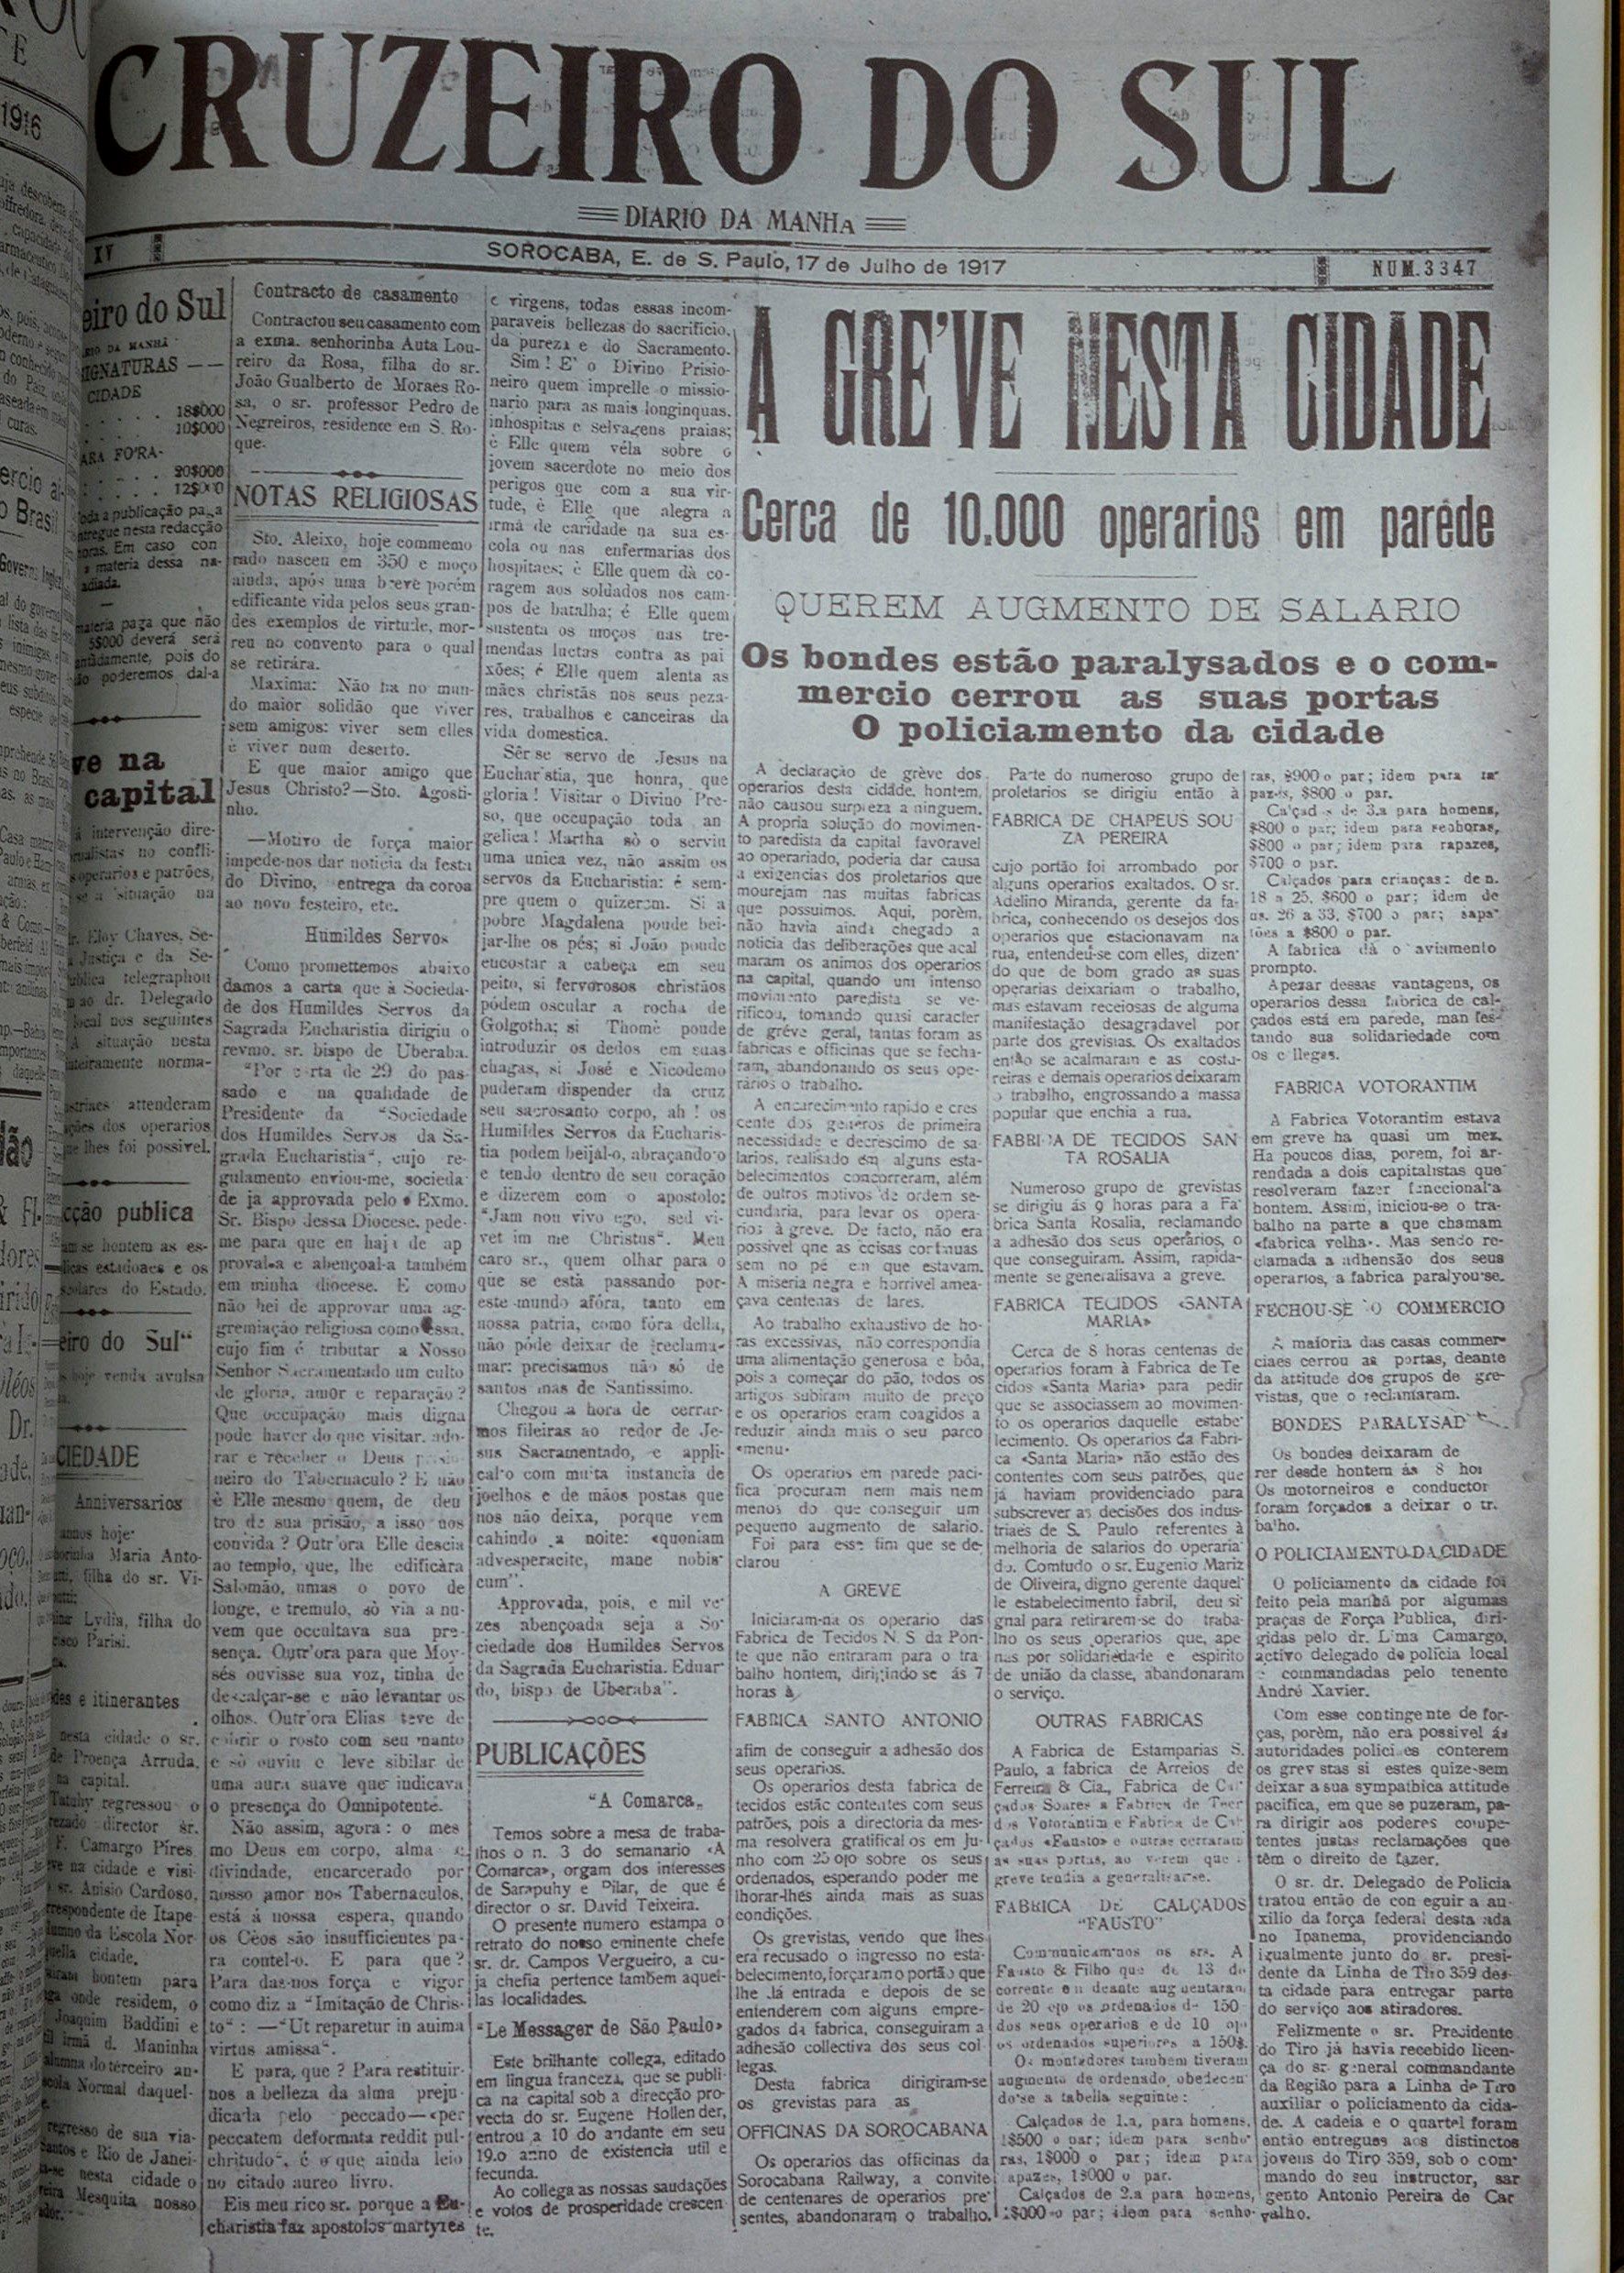 Capa do jornal Cruzeiro do Sul, de 17 de julho de 1917, aborda a greve geral dos operários em Sorocaba